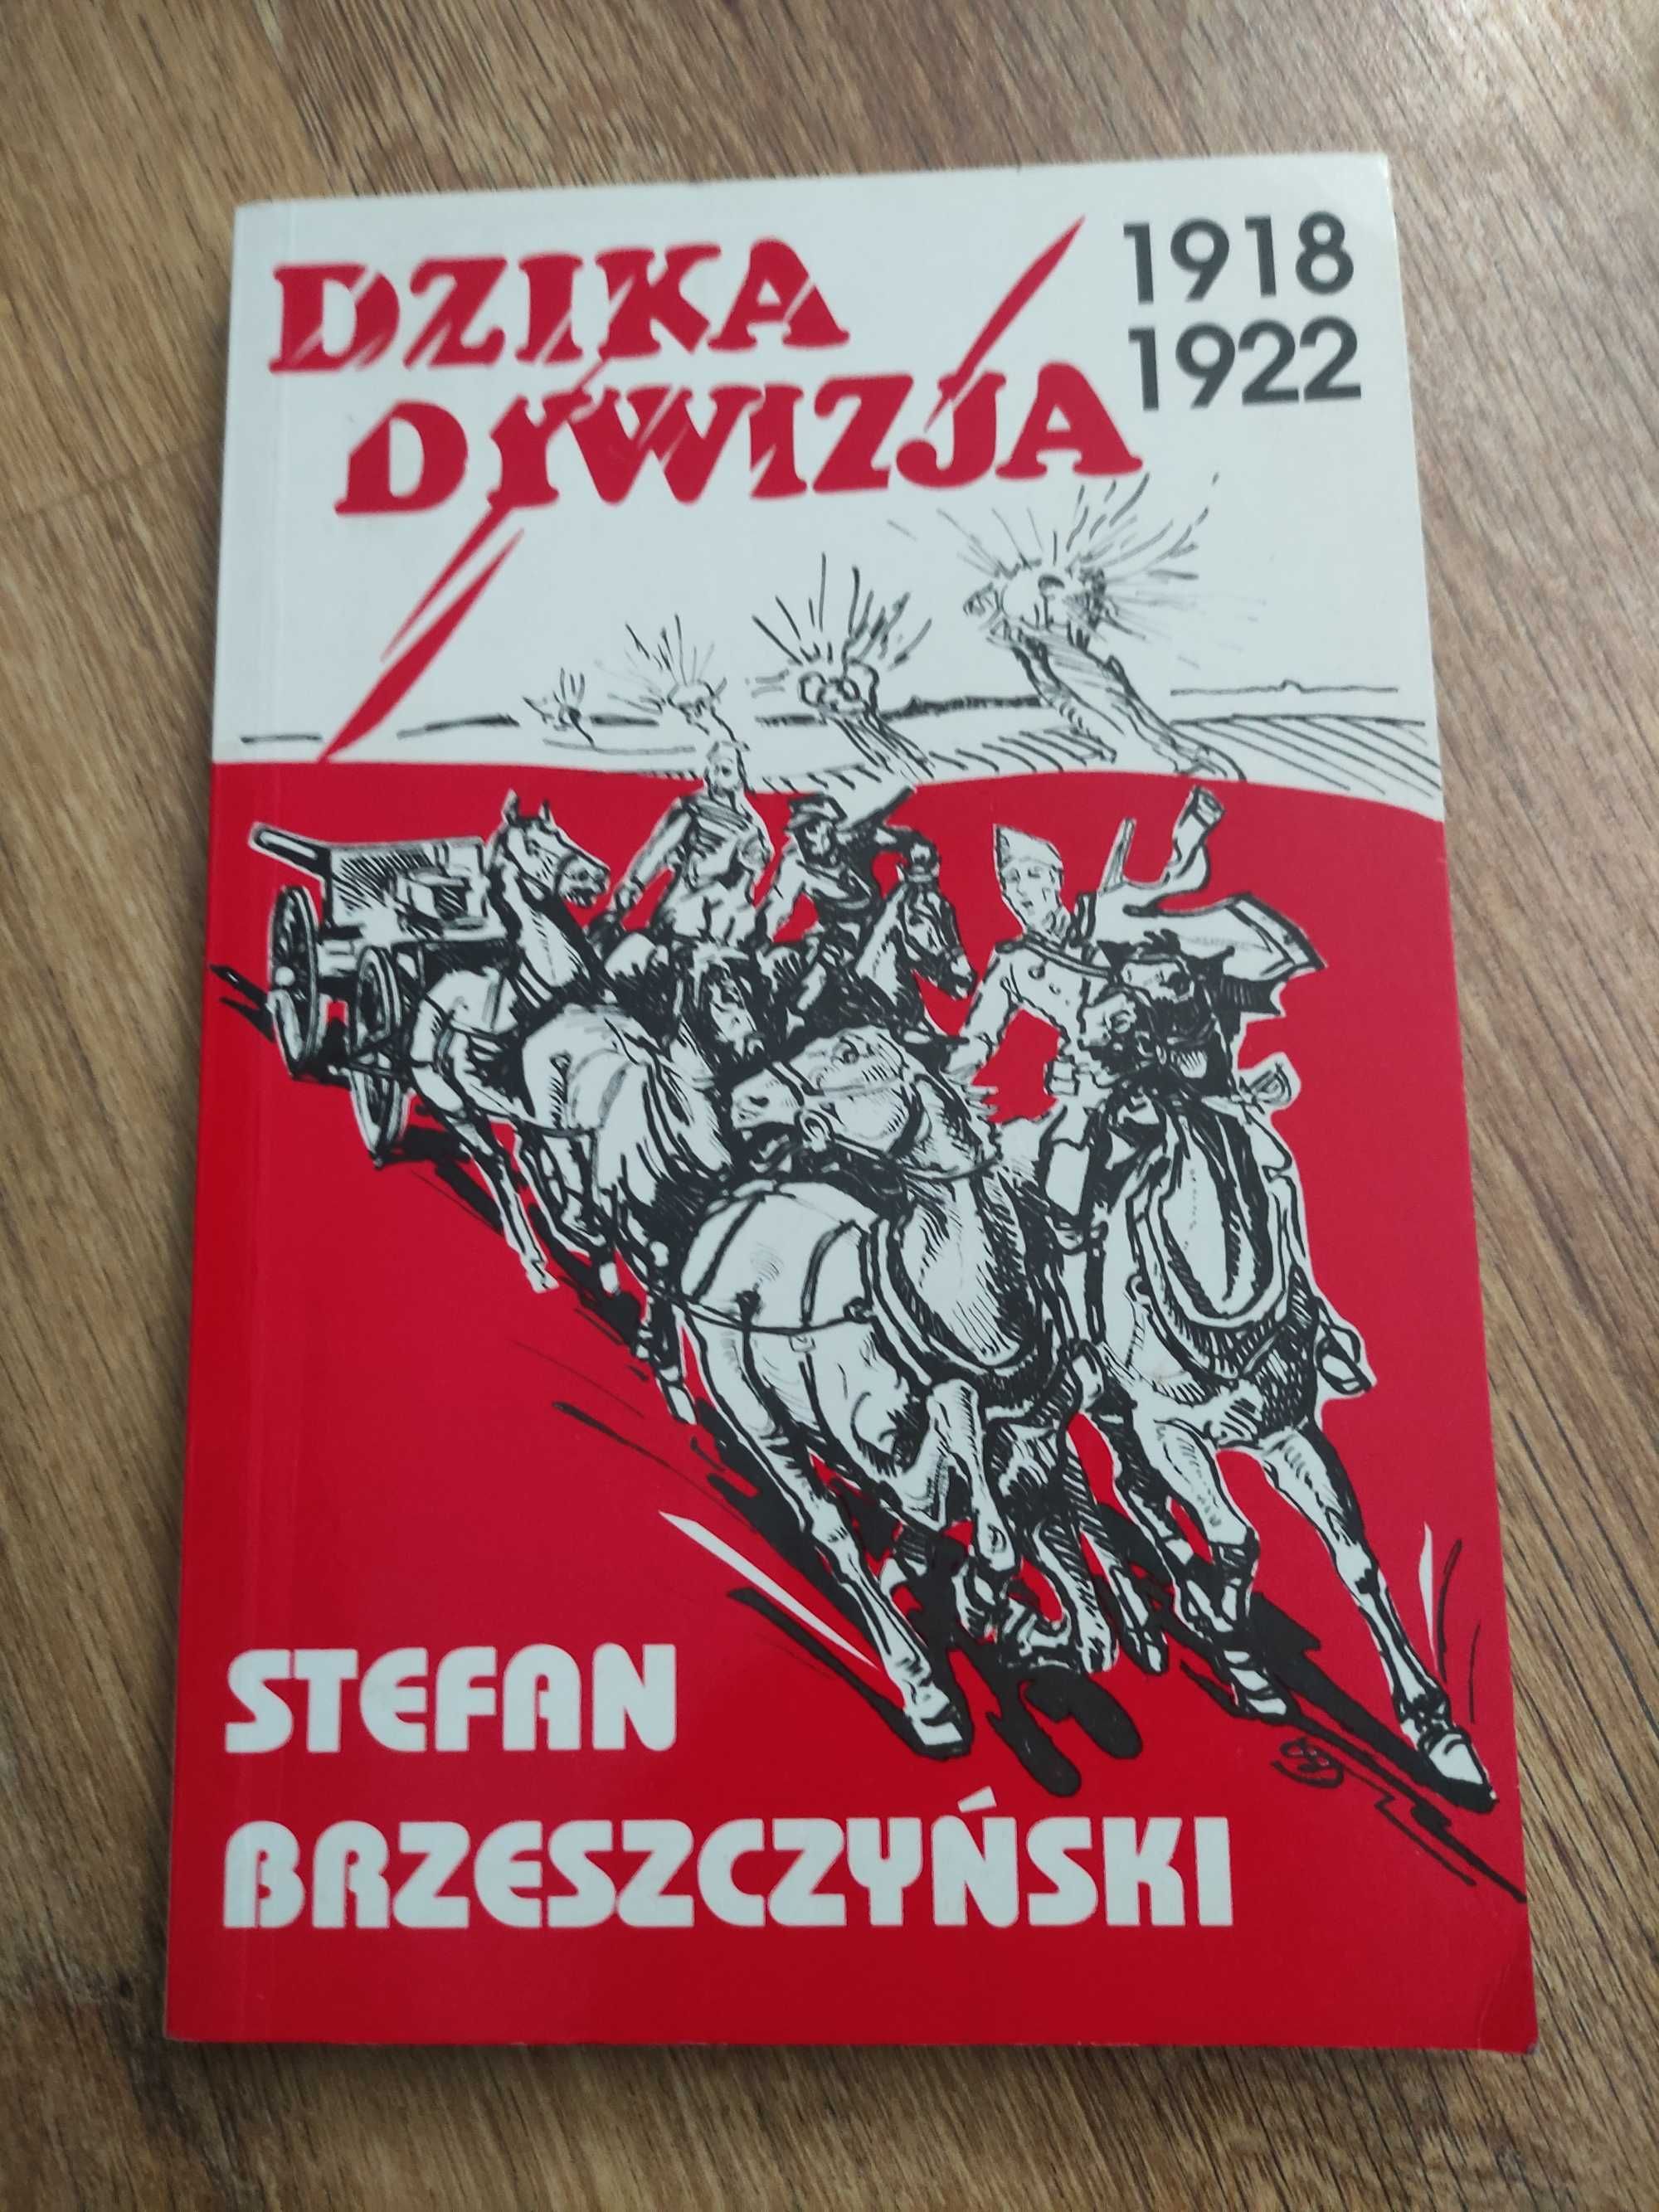 Stefan Brzeszczyński Dzika dywizja